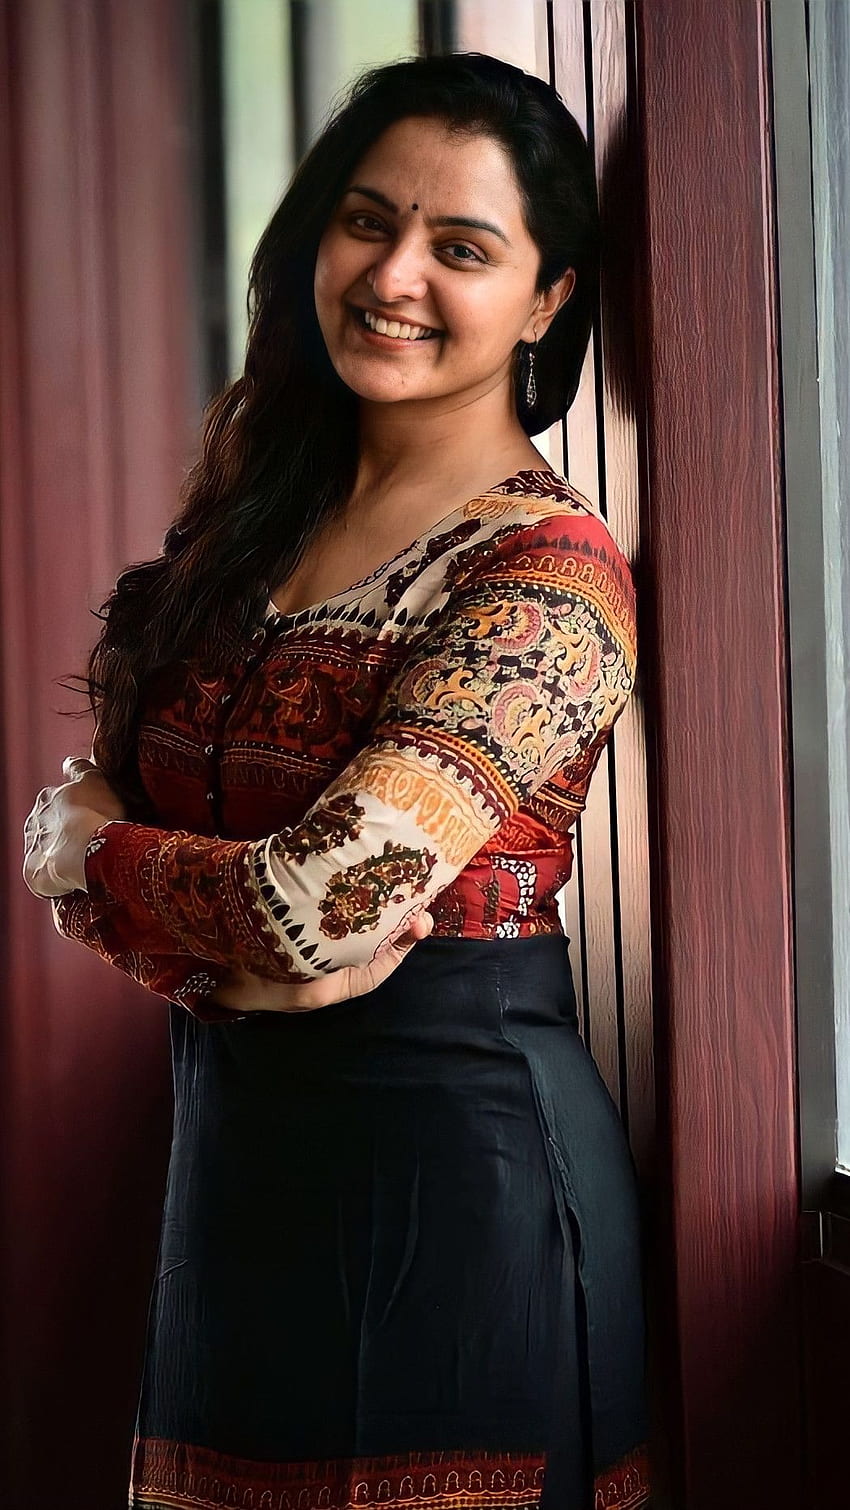 Prajurit Manju, aktris malayalam wallpaper ponsel HD